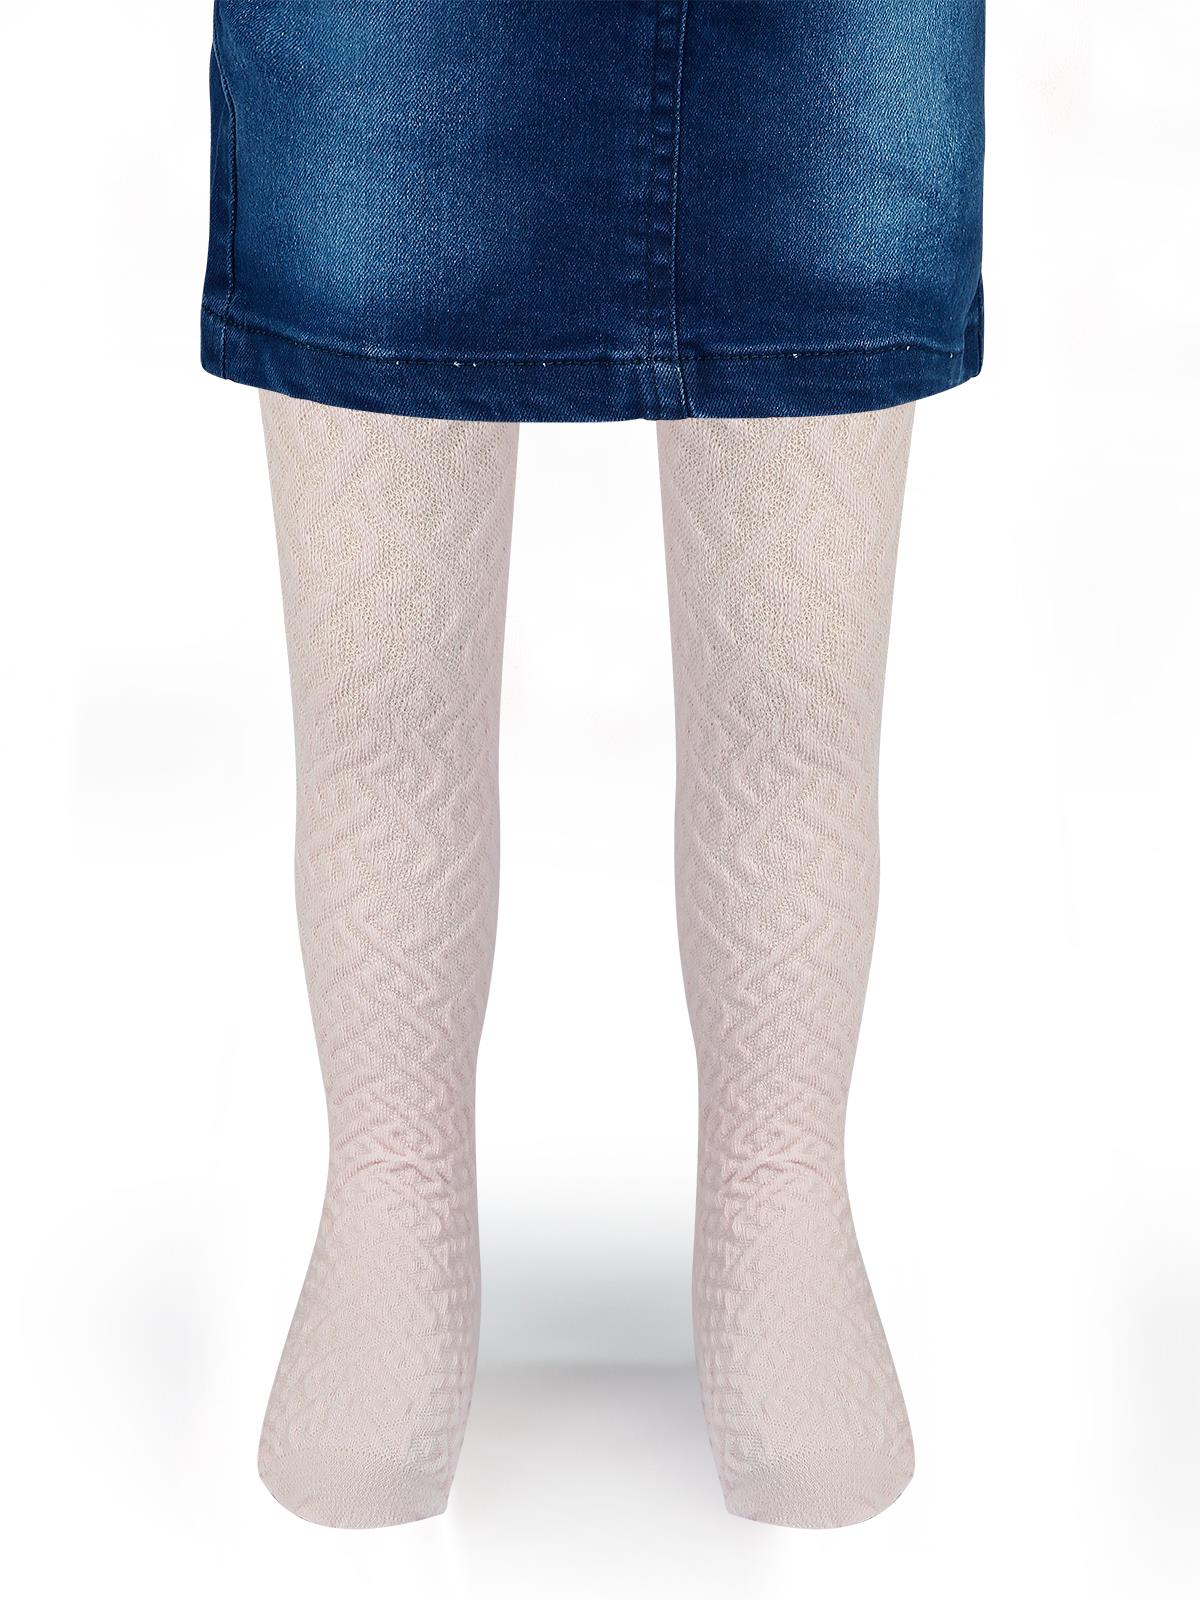 Bella Calze Kız Çocuk Triko Külotlu Çorap 2-11 Yaş Pembe